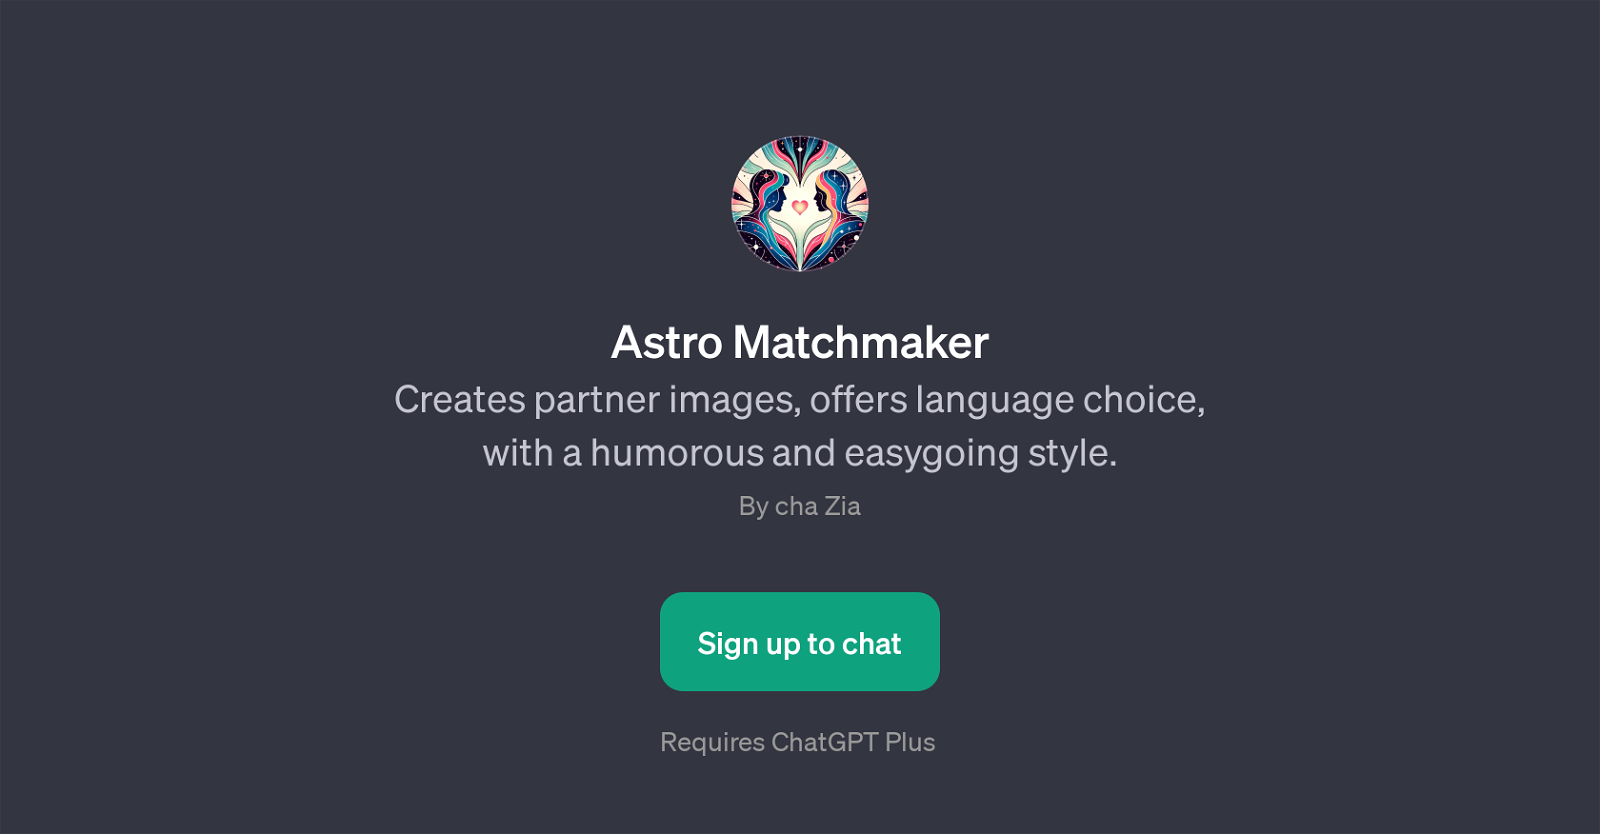 Astro Matchmaker website